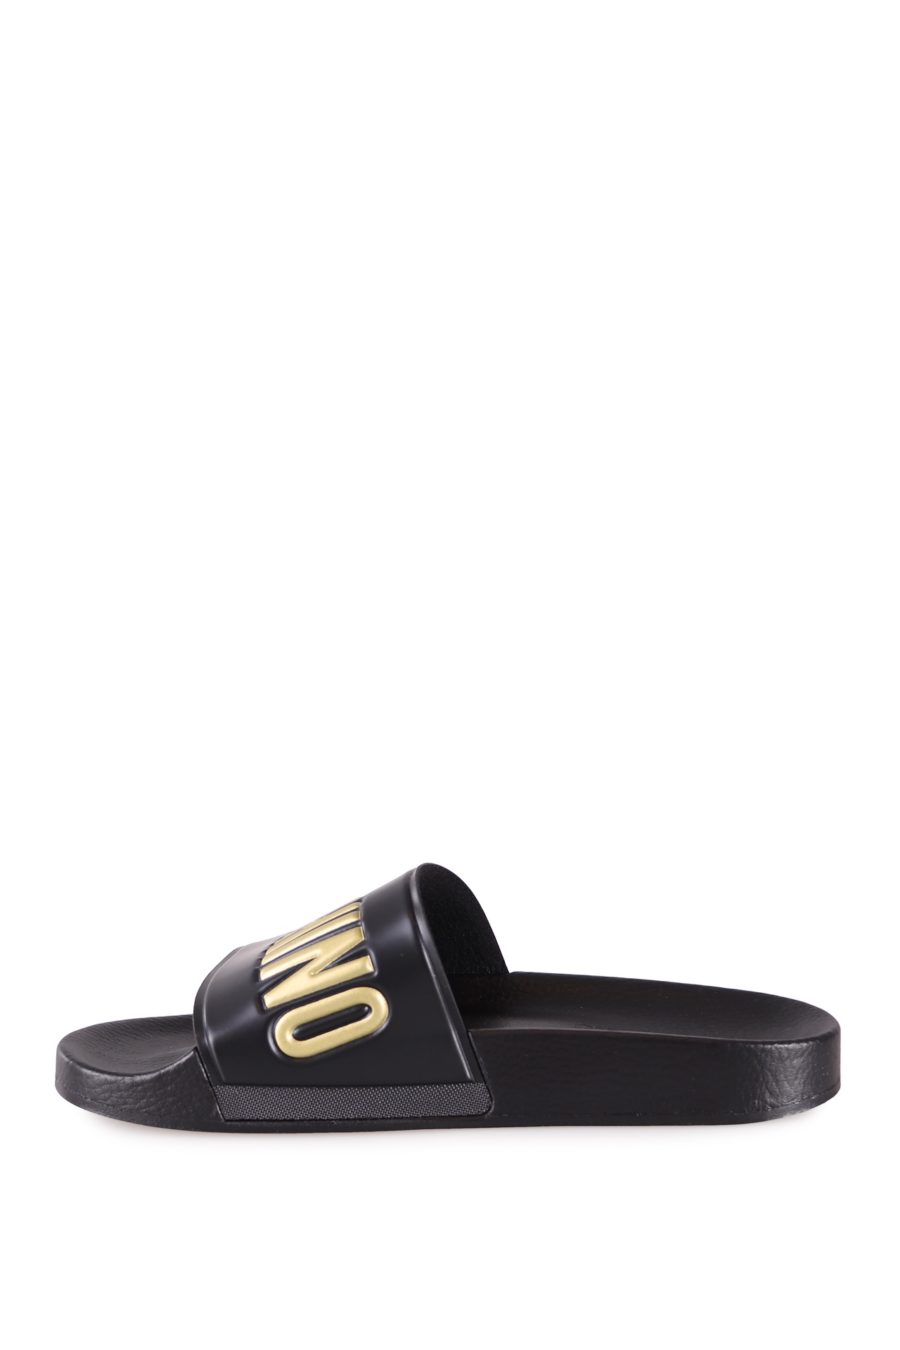 Moschino Couture tongs noires avec logo doré - b6878935f6969ce626fd212a91b35b5e4f174ab4